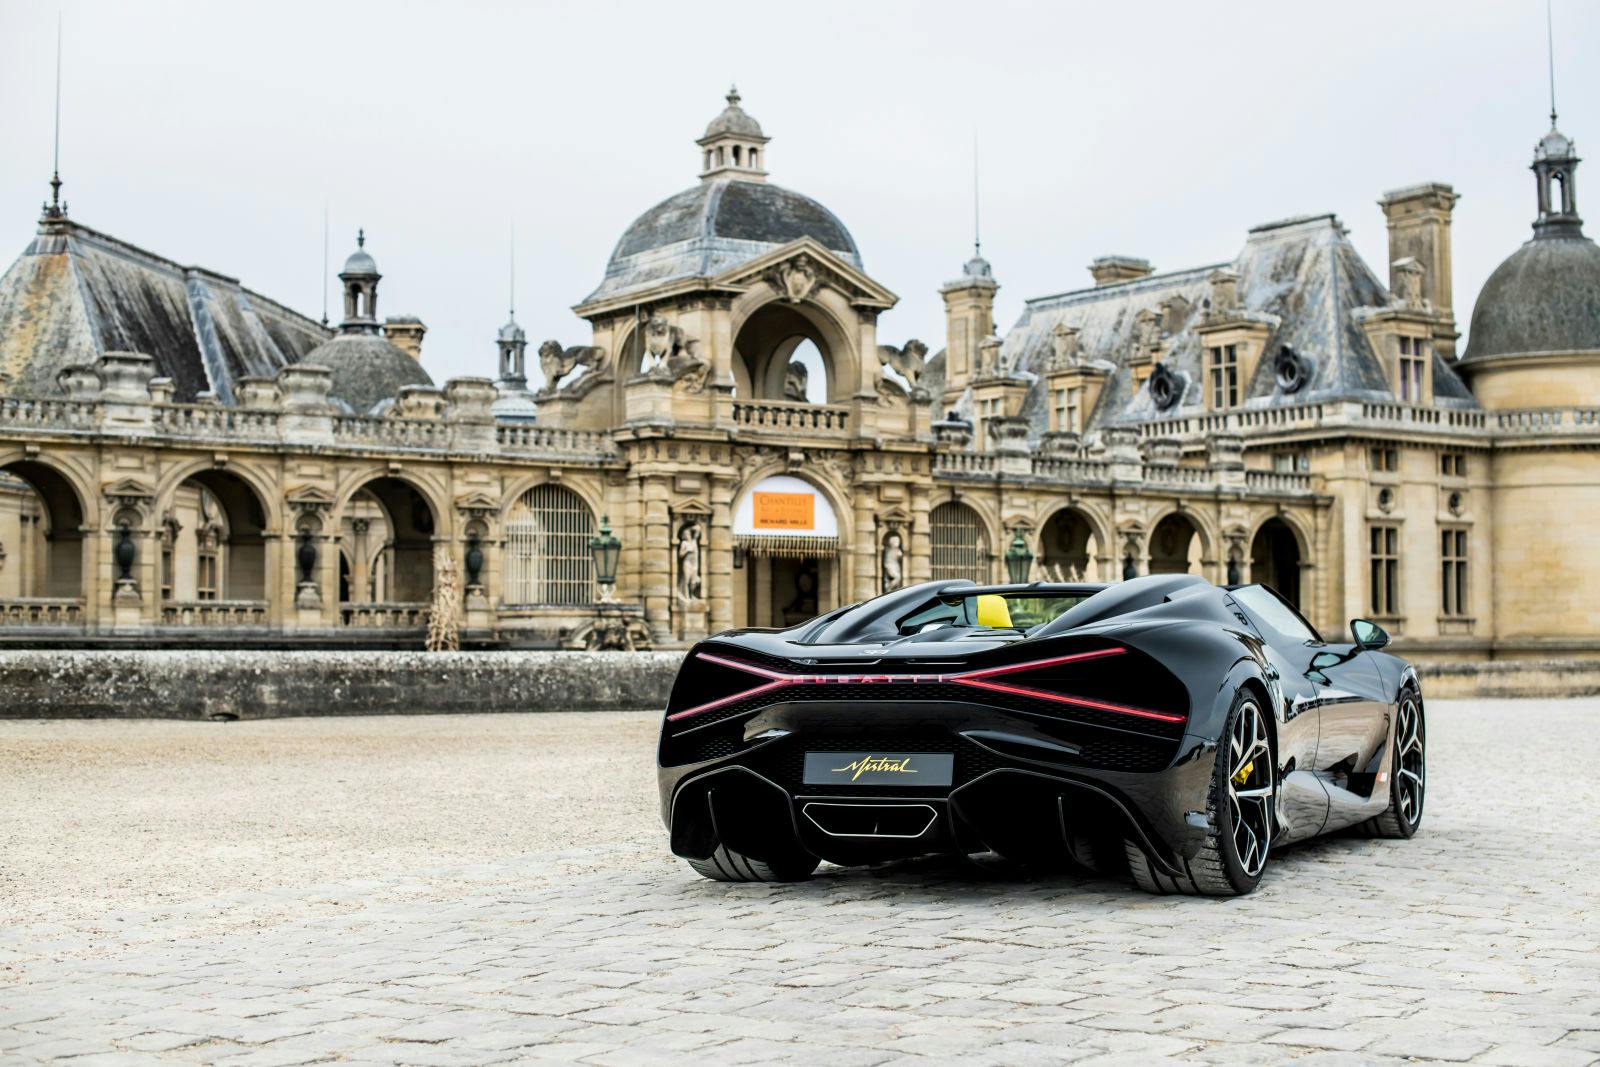 Der Bugatti W16 Mistral feierte  sein Europadebüt  beim Concours d'Elegance de Chantilly Arts & Elegance Richard Mille.